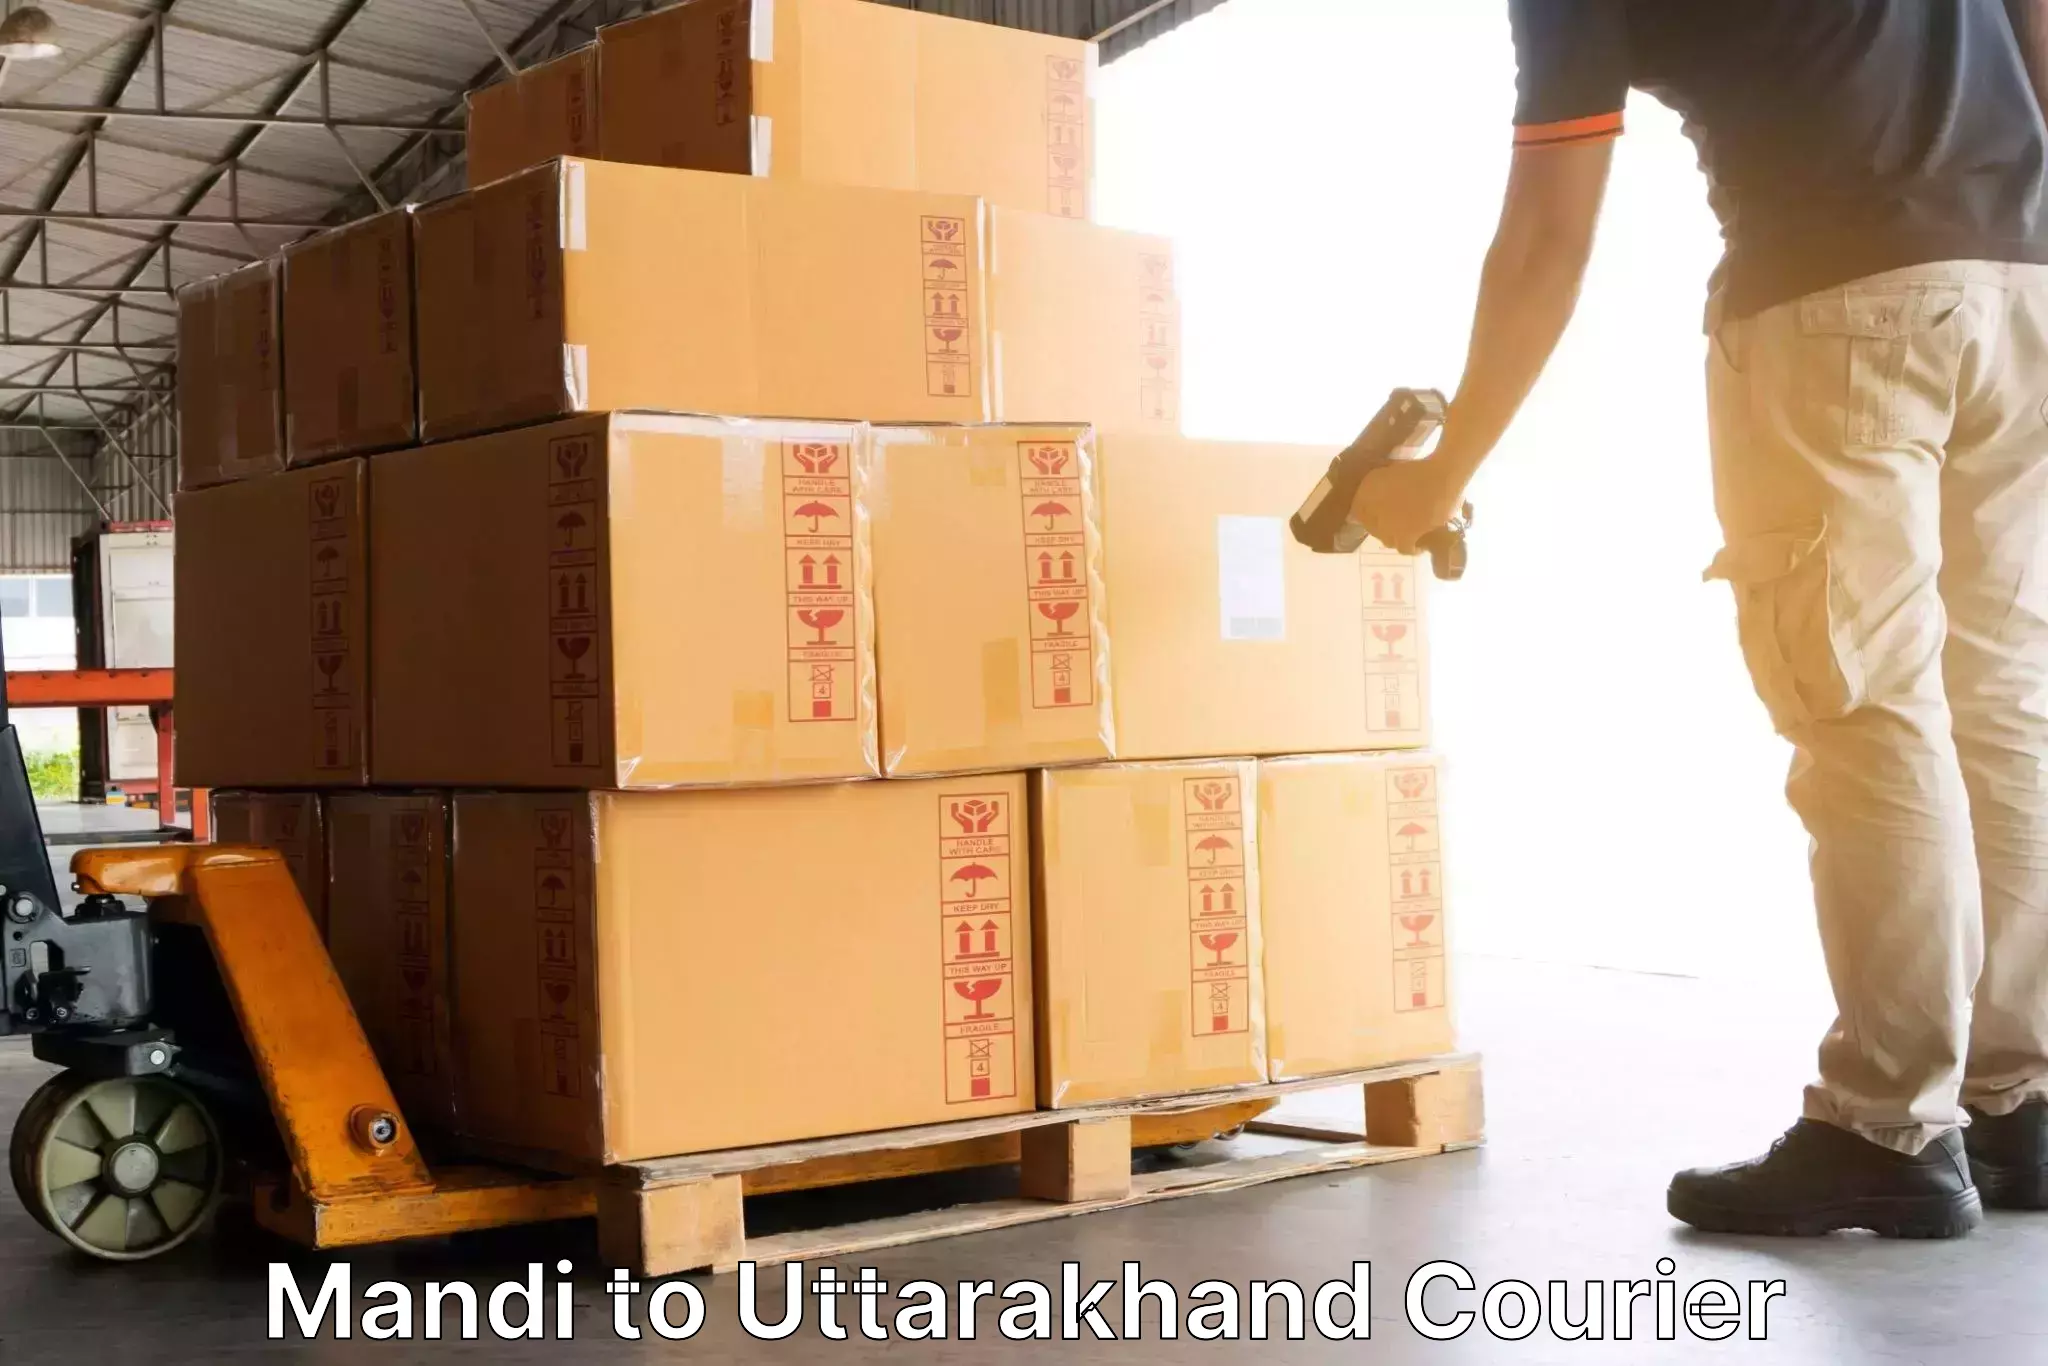 Nationwide parcel services Mandi to Uttarakhand